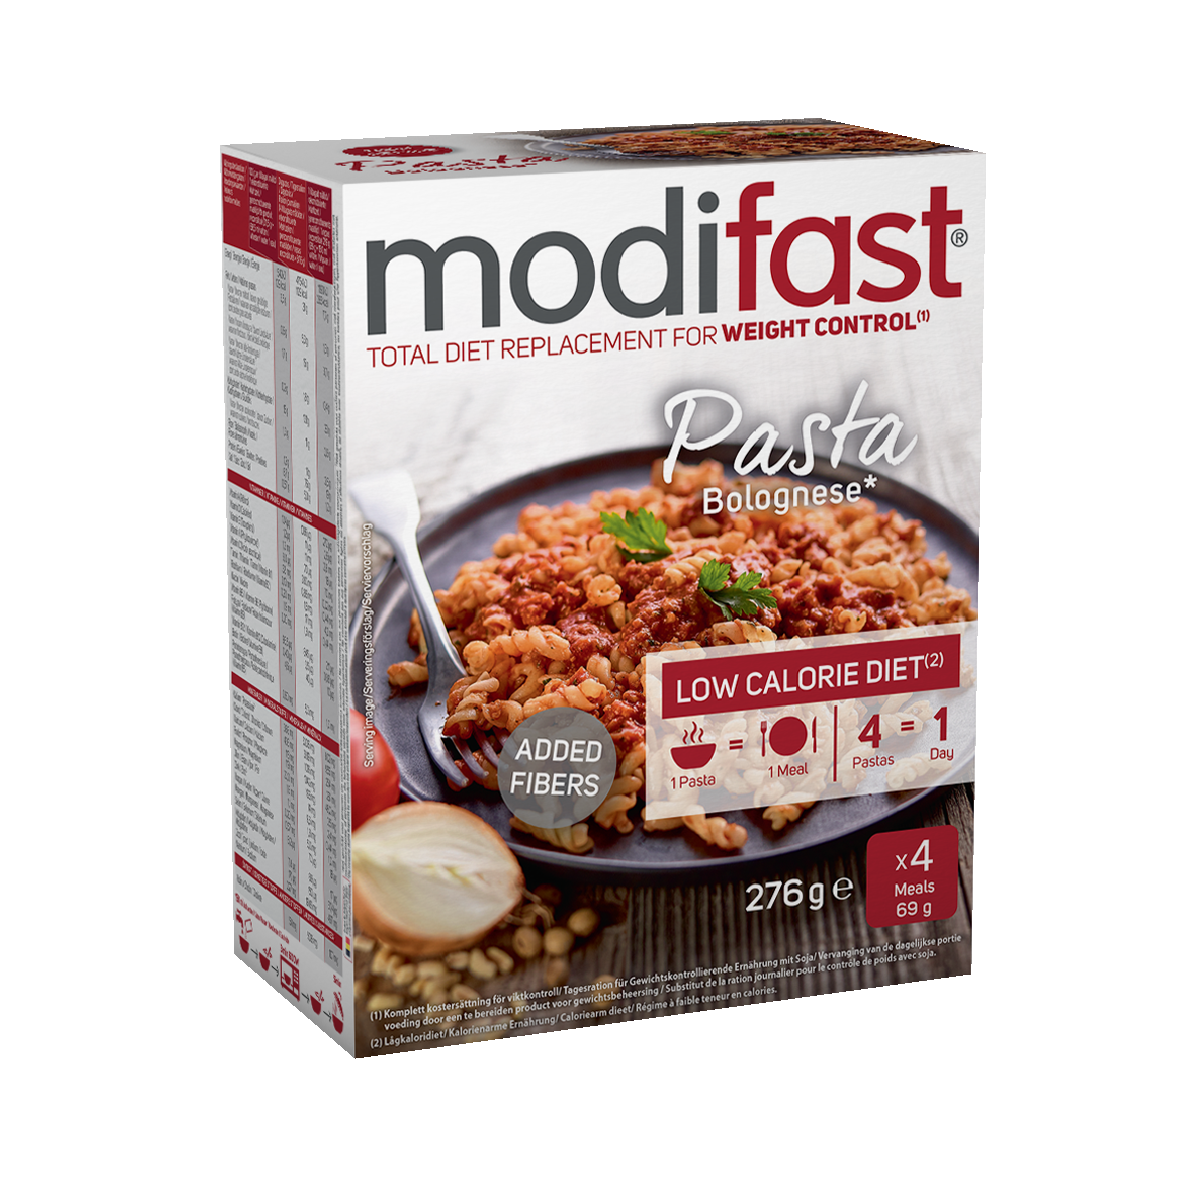  Modifast Pasta Bolognese - repas contrôle de poids